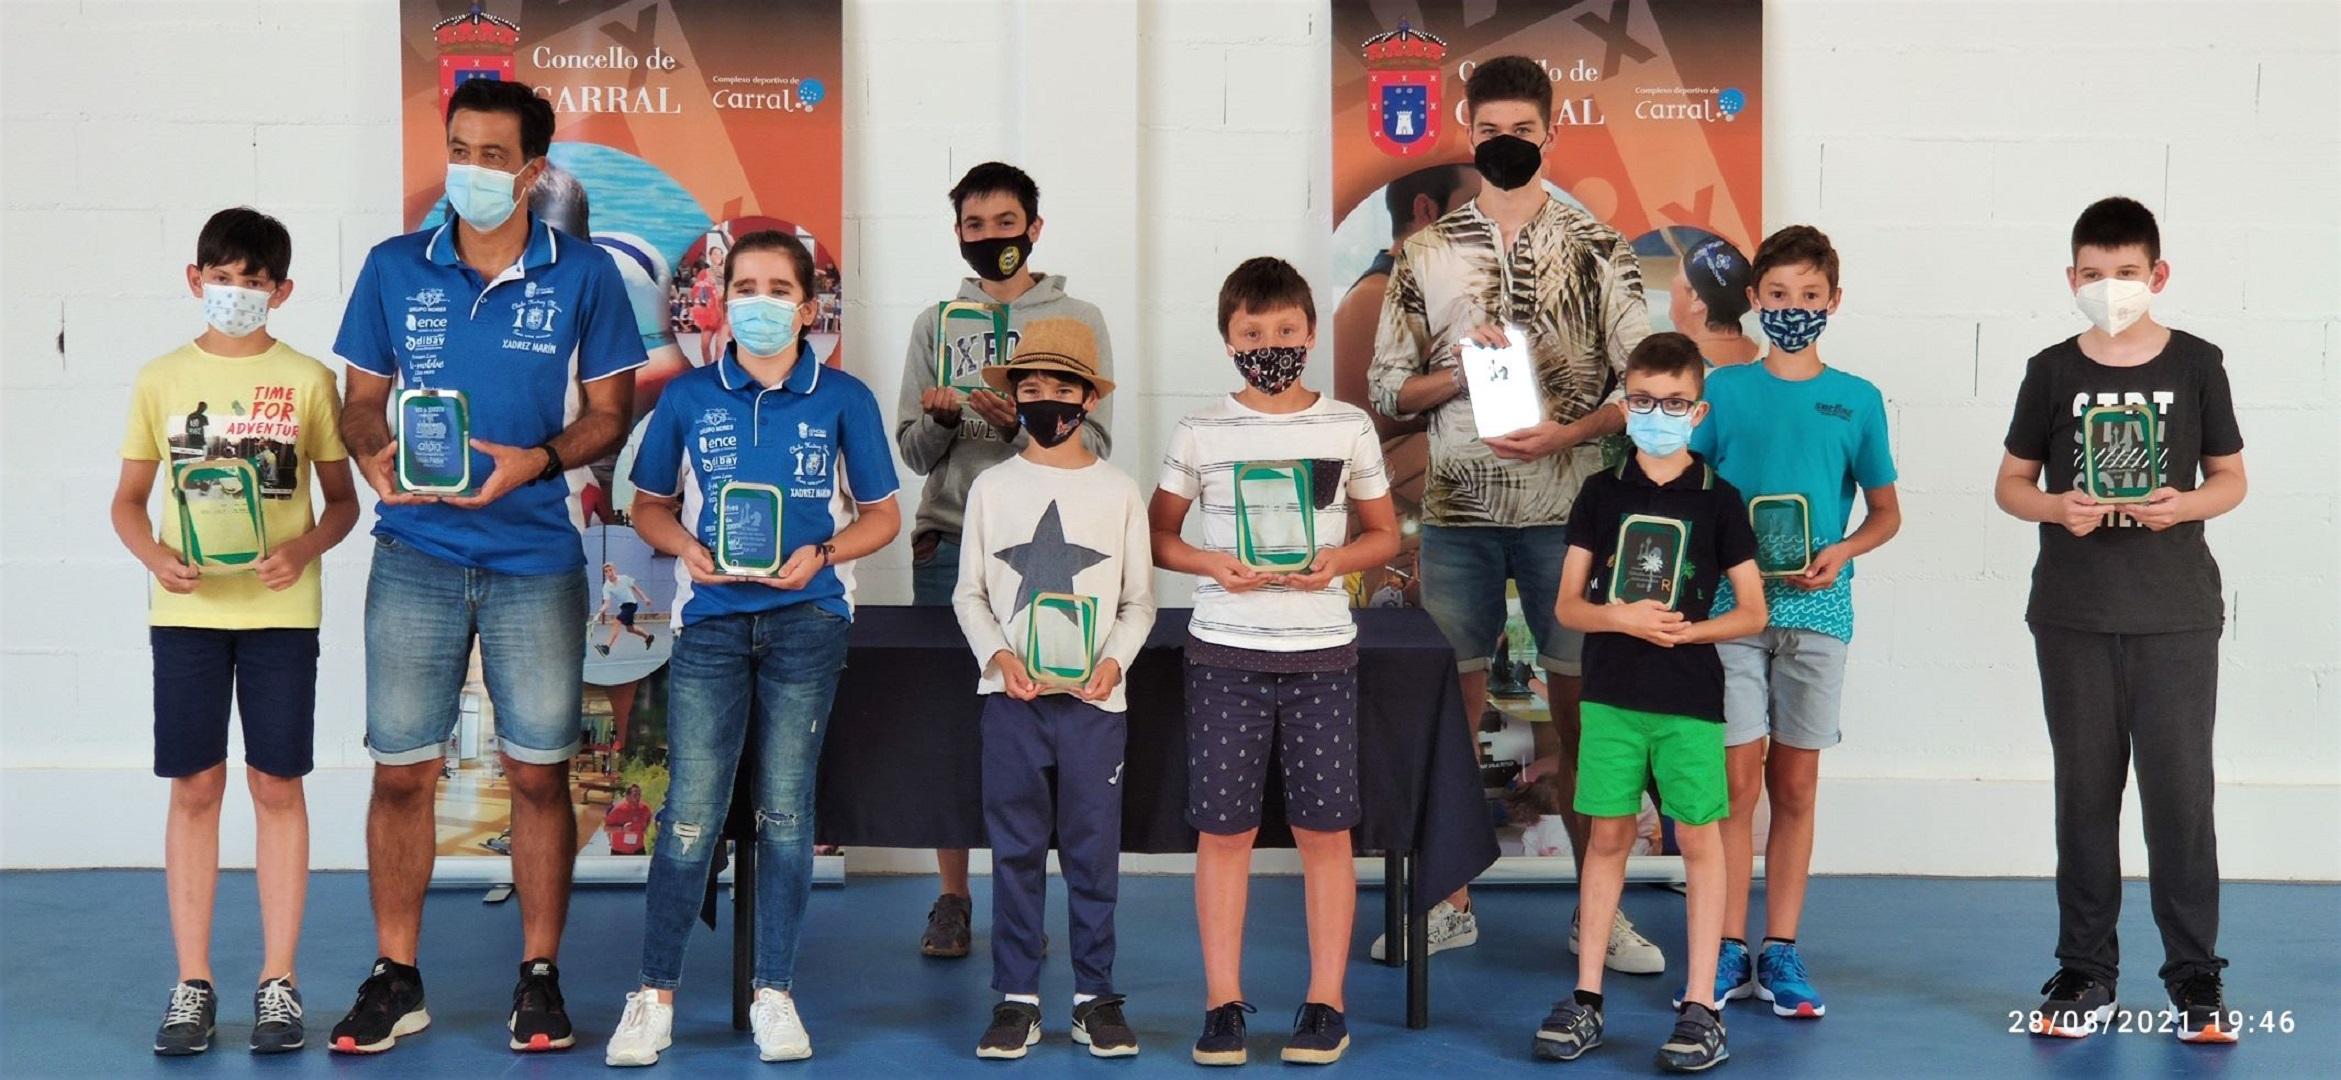 Los ganadores del Torneo de Ajedrez de Verano de Carral (Concello de Carral).